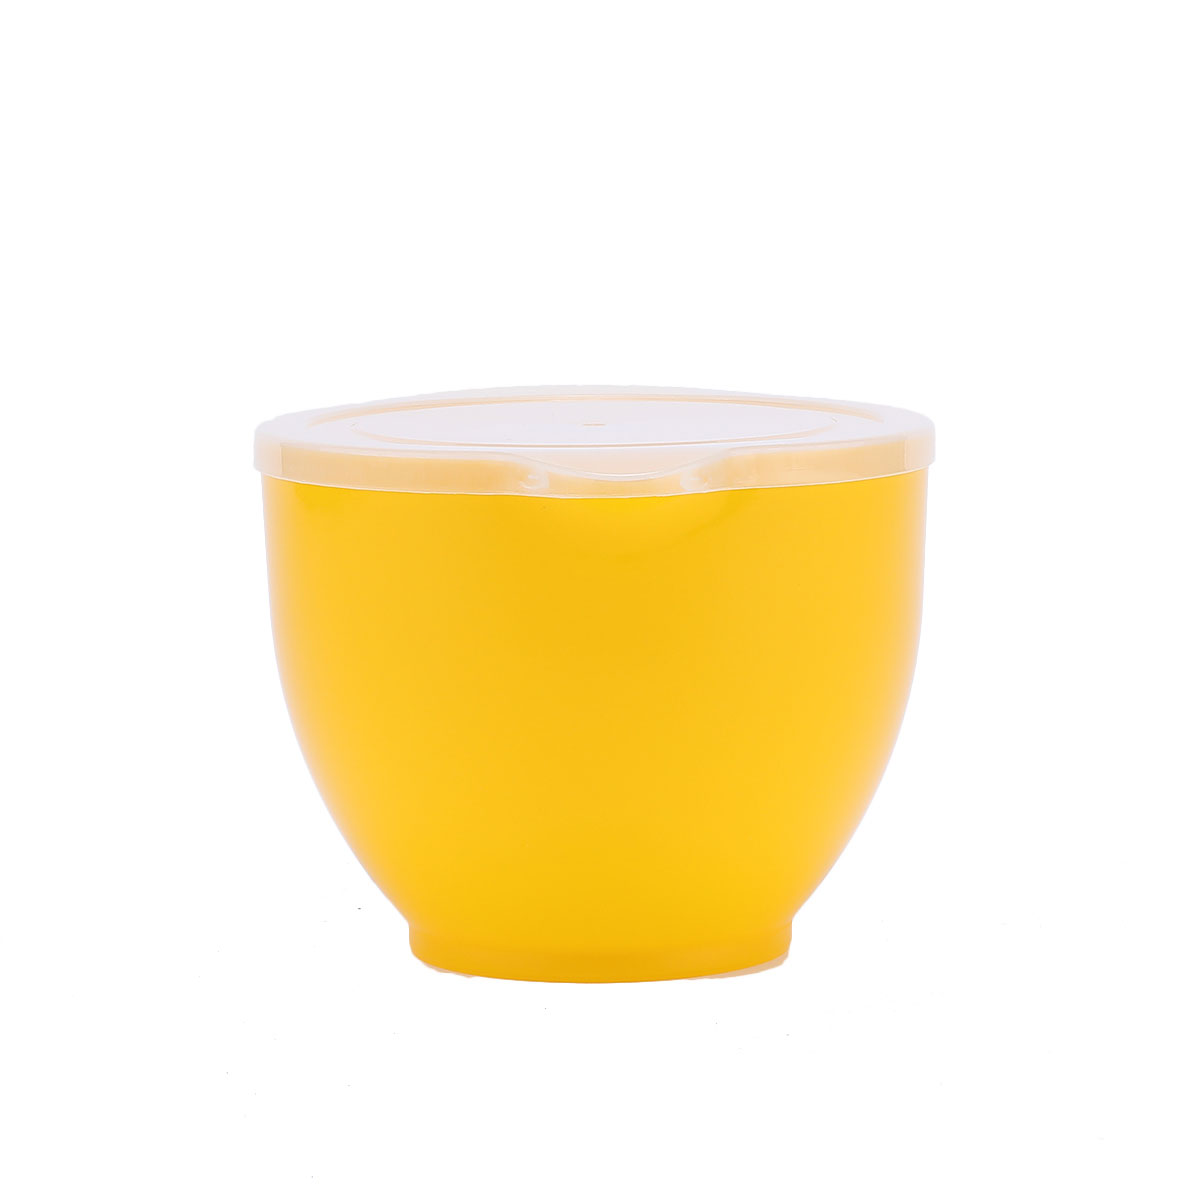 뚜껑이 있는 혼합 그릇 세트 3개 플라스틱 샐러드 중첩 그릇 - 4